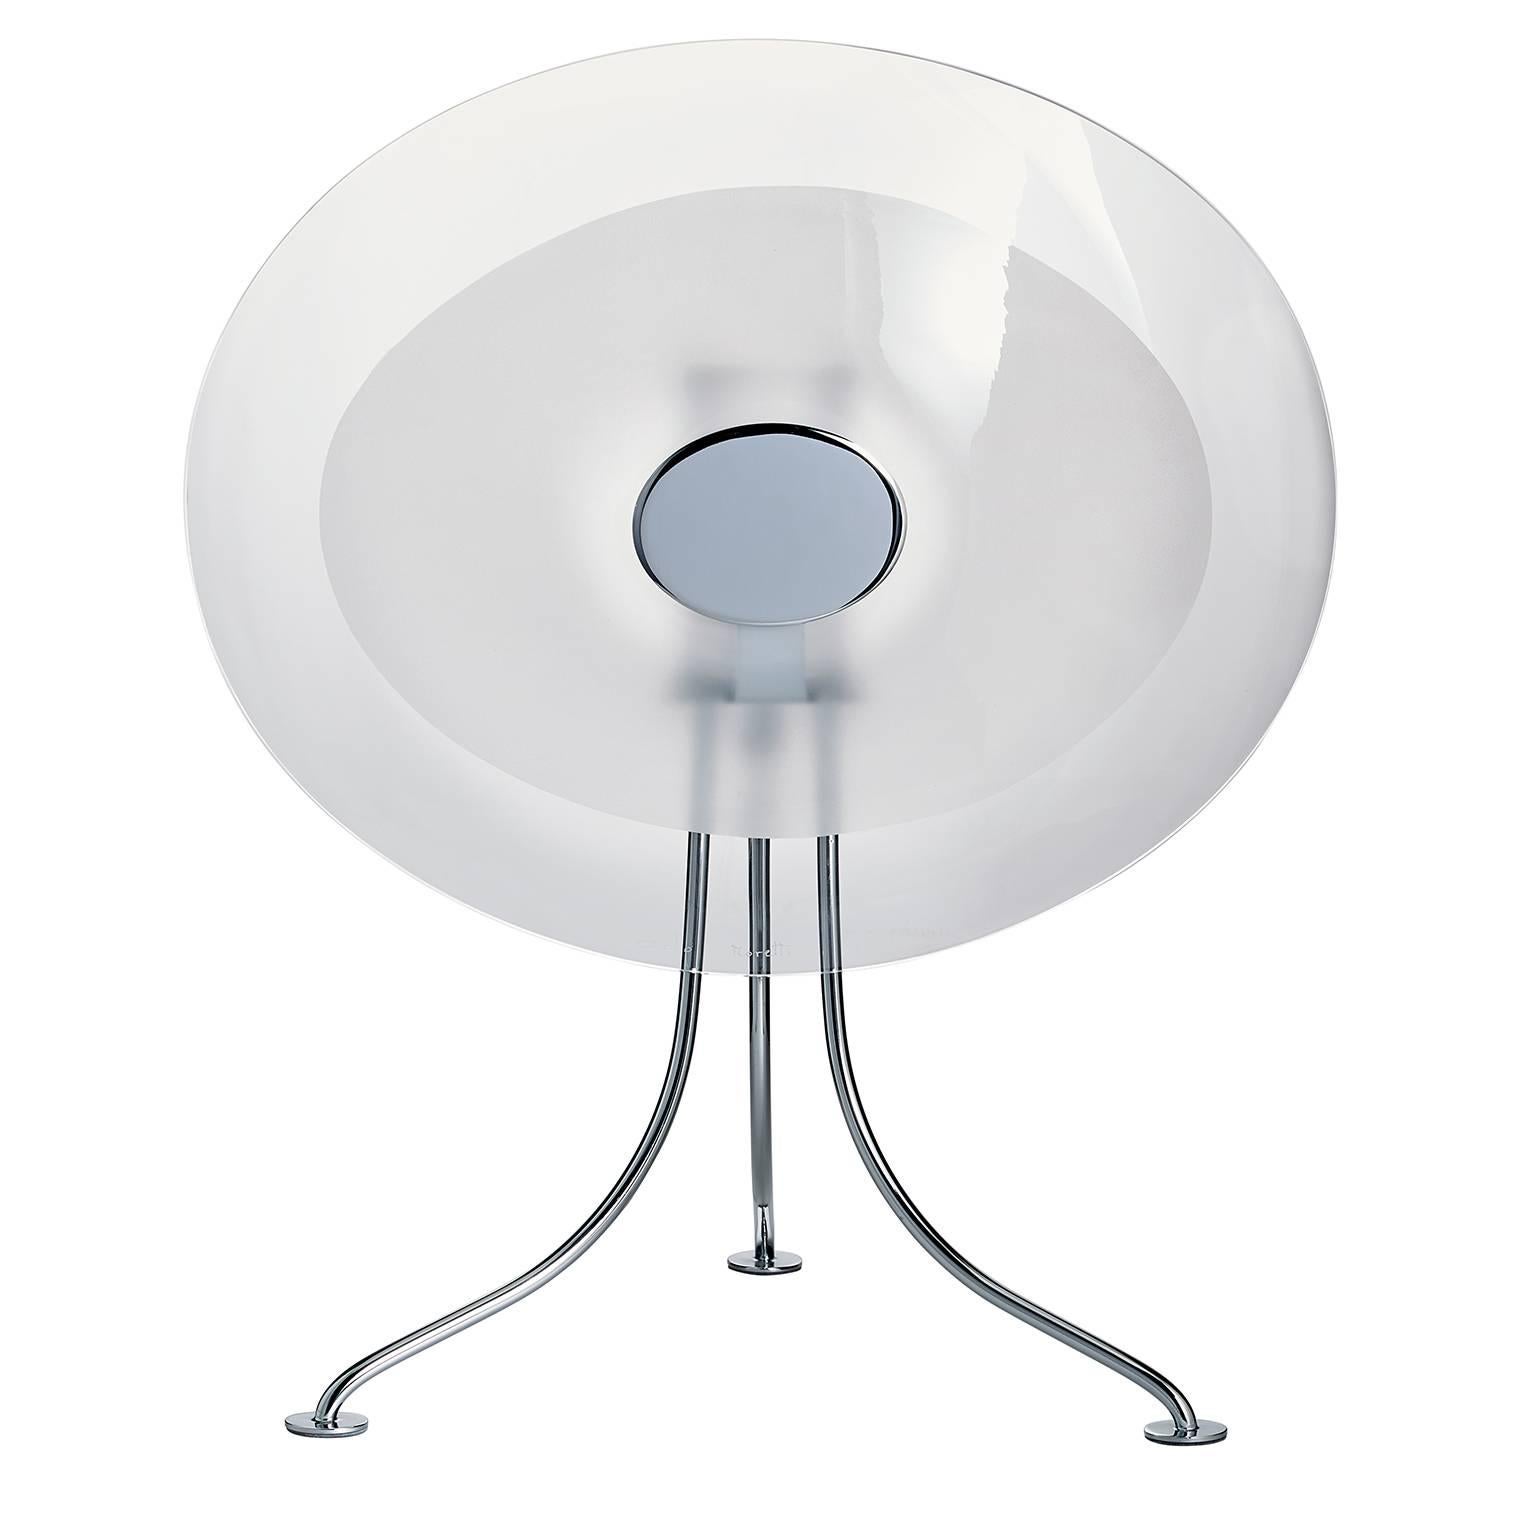 Scudo Carlo Moretti Contemporary Murano Clear Glass Desk or Table Lamp